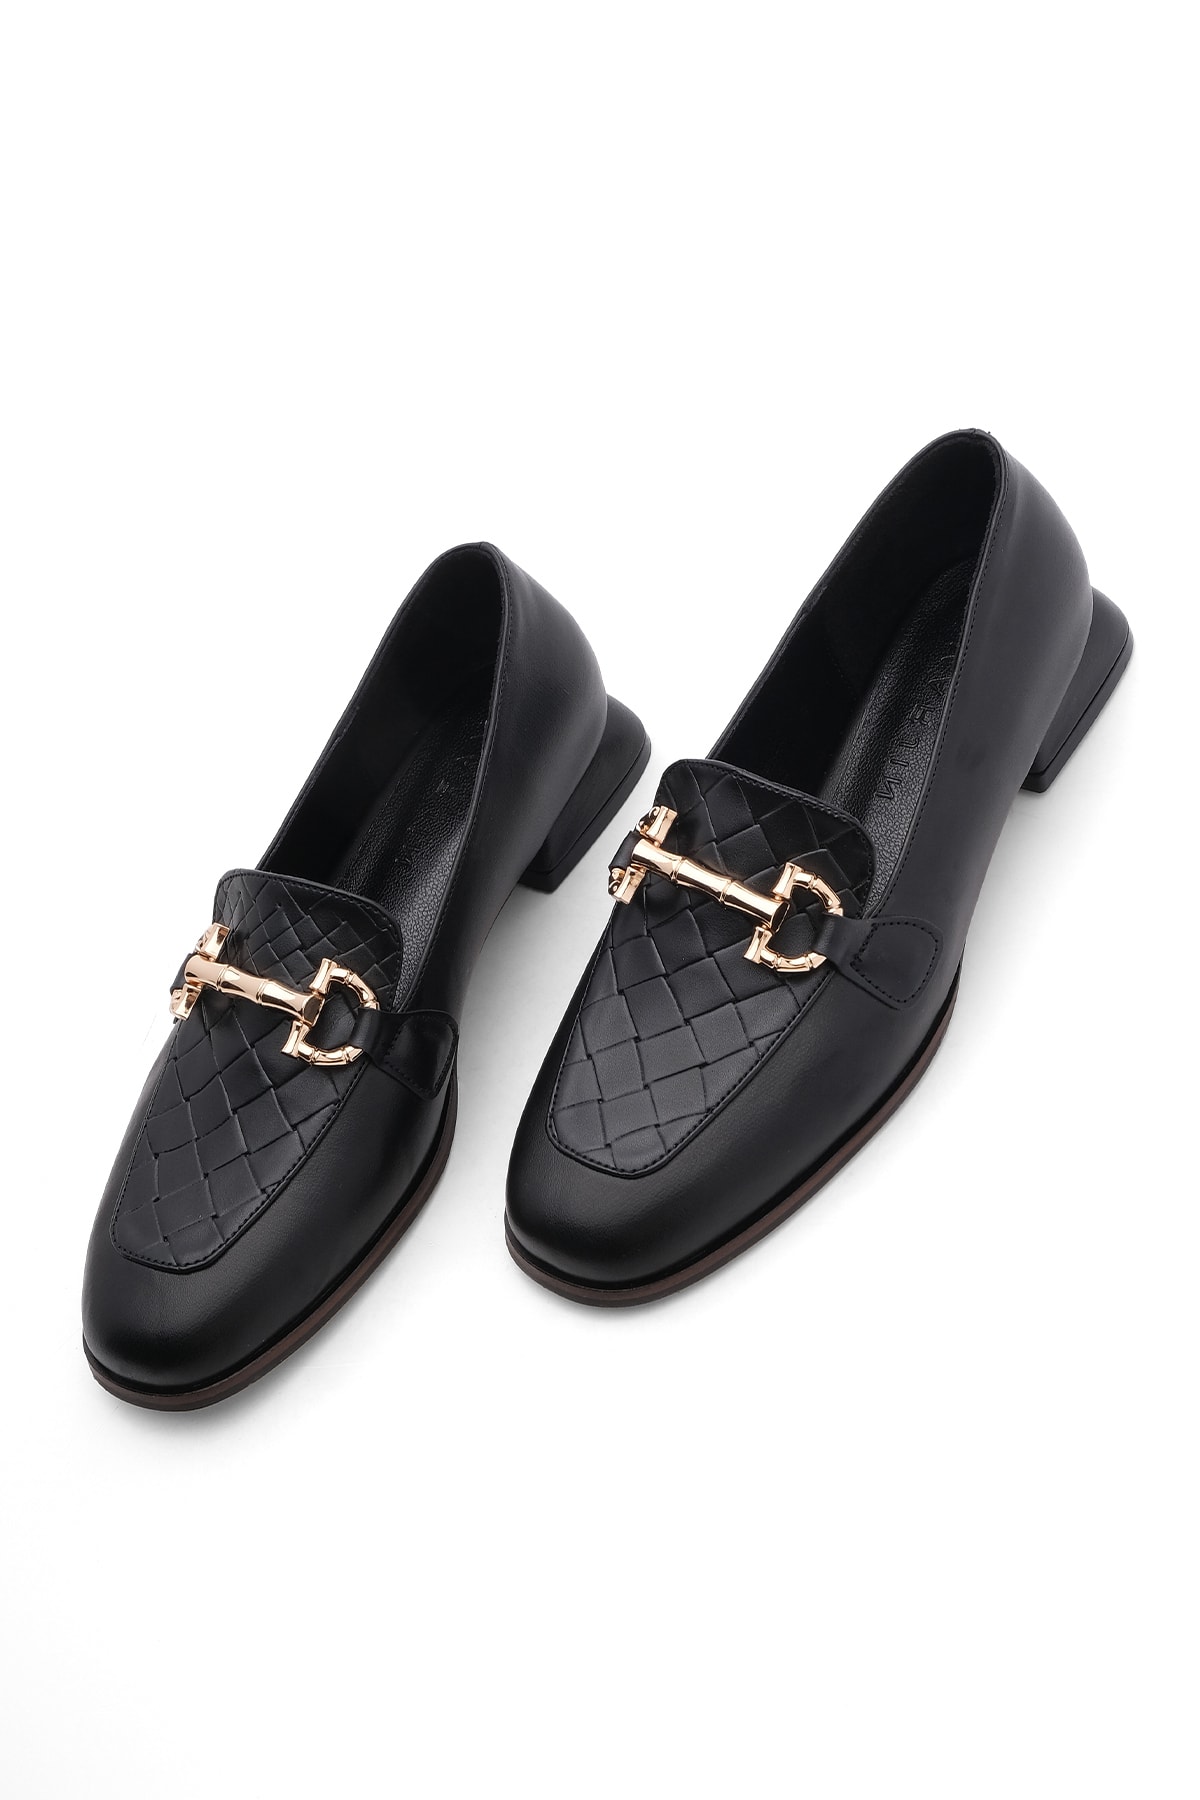 Marjin Kadın Loafer Zincirli Gold Tokalı Günlük Ayakkabı Vokel siyah